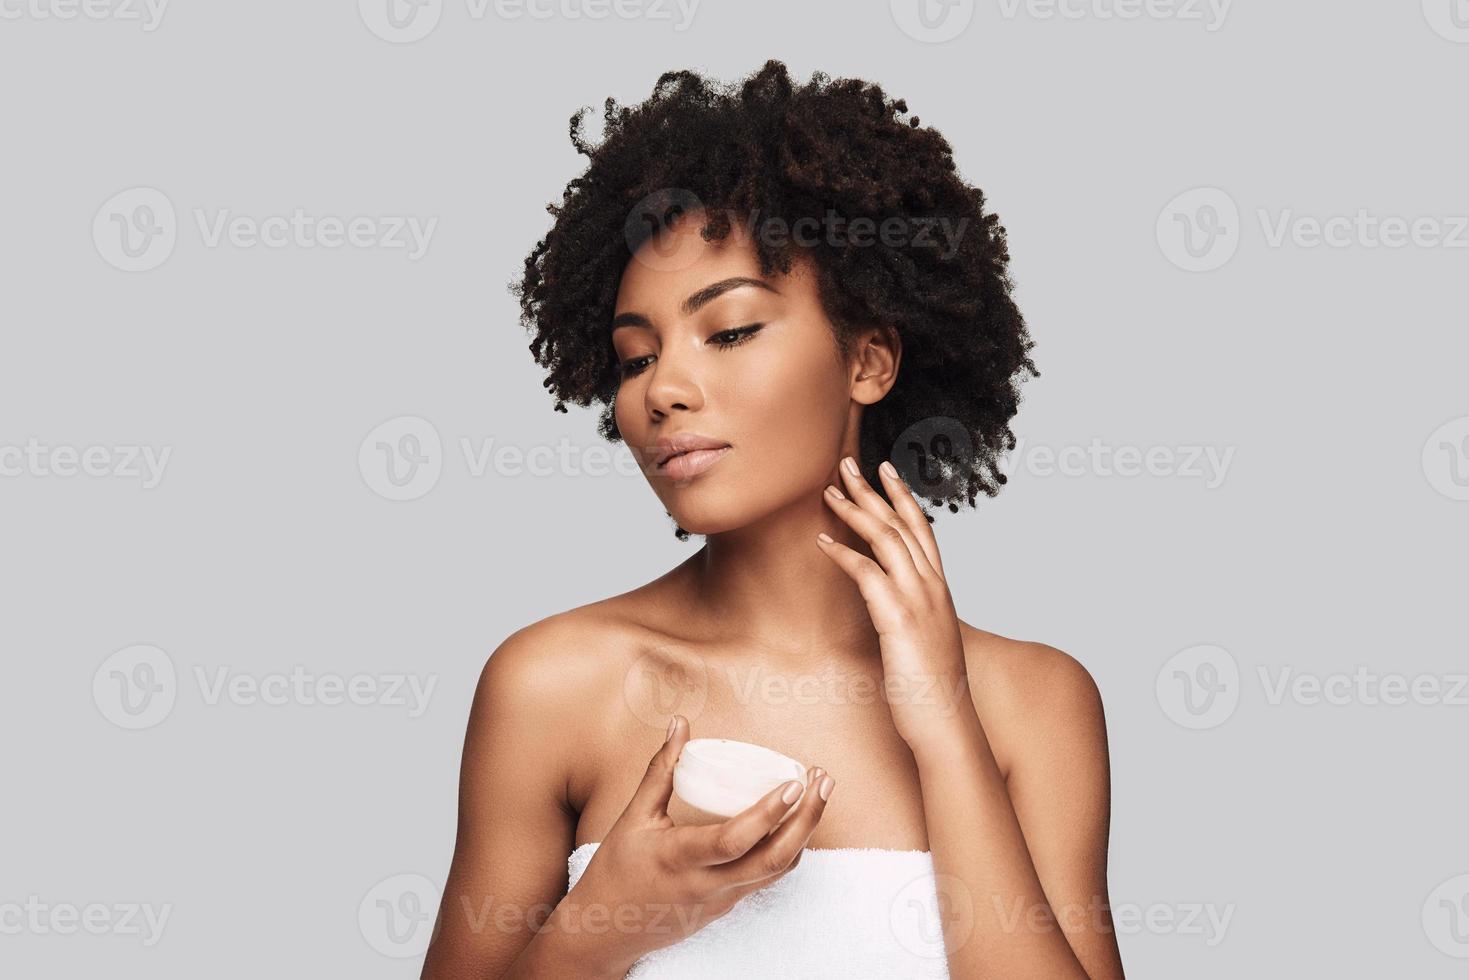 limpio y fresco. atractiva joven africana aplicando crema hidratante y sonriendo mientras se enfrenta a un fondo gris foto